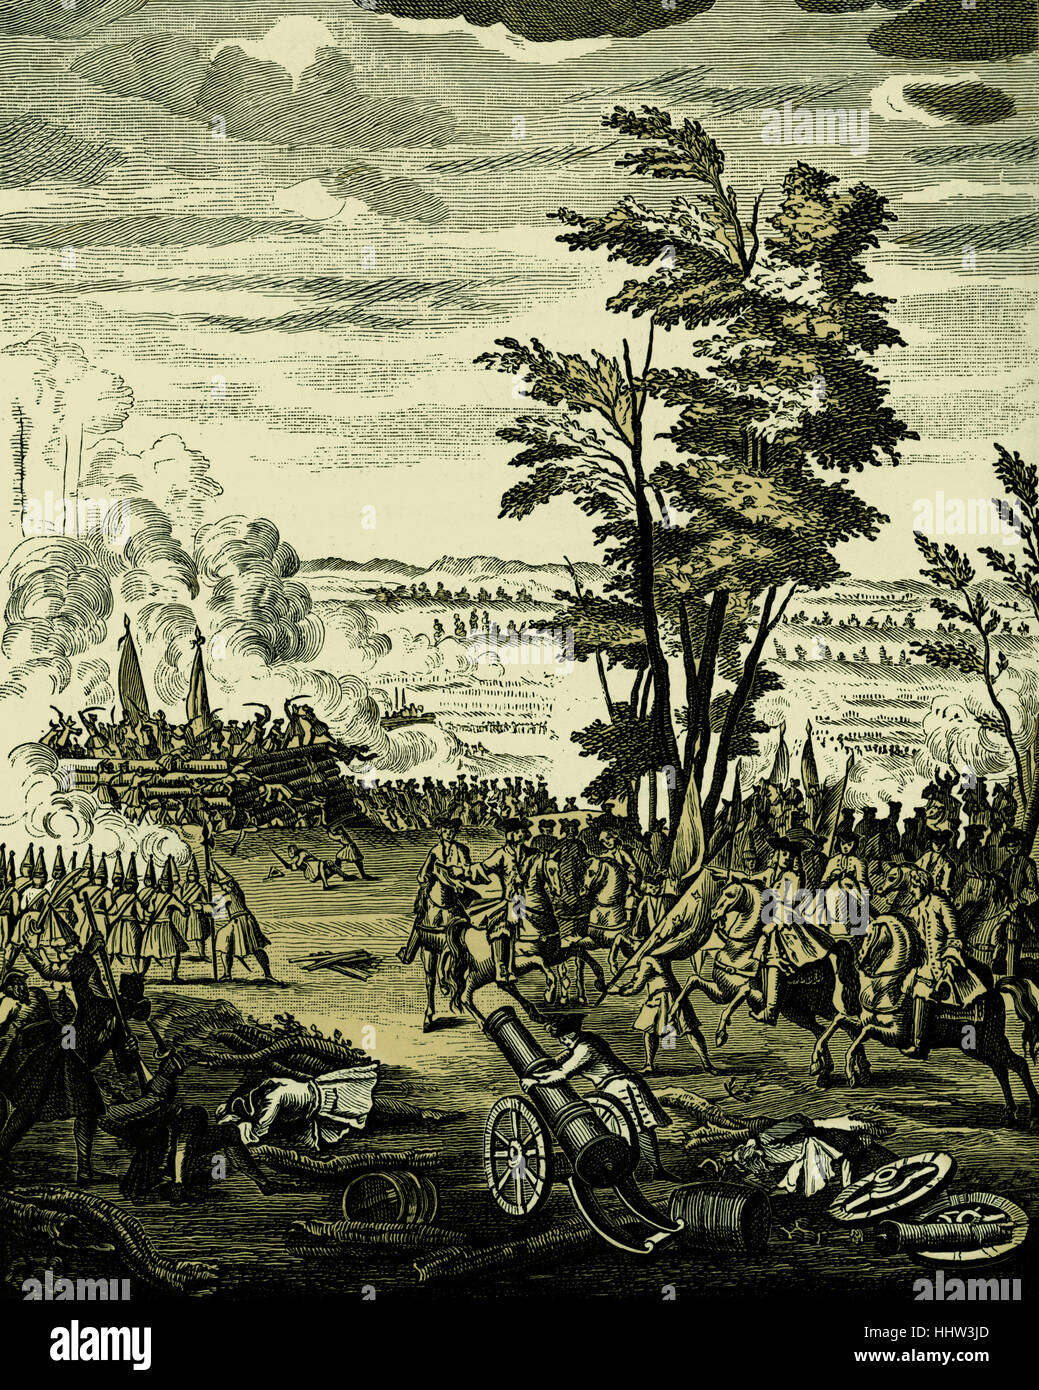 Battaglia di Malplaquet, 11 settembre 1709, durante la Guerra di Successione spagnola (1701-1714). Da "La storia di Queen Anne', 1740. Foto Stock